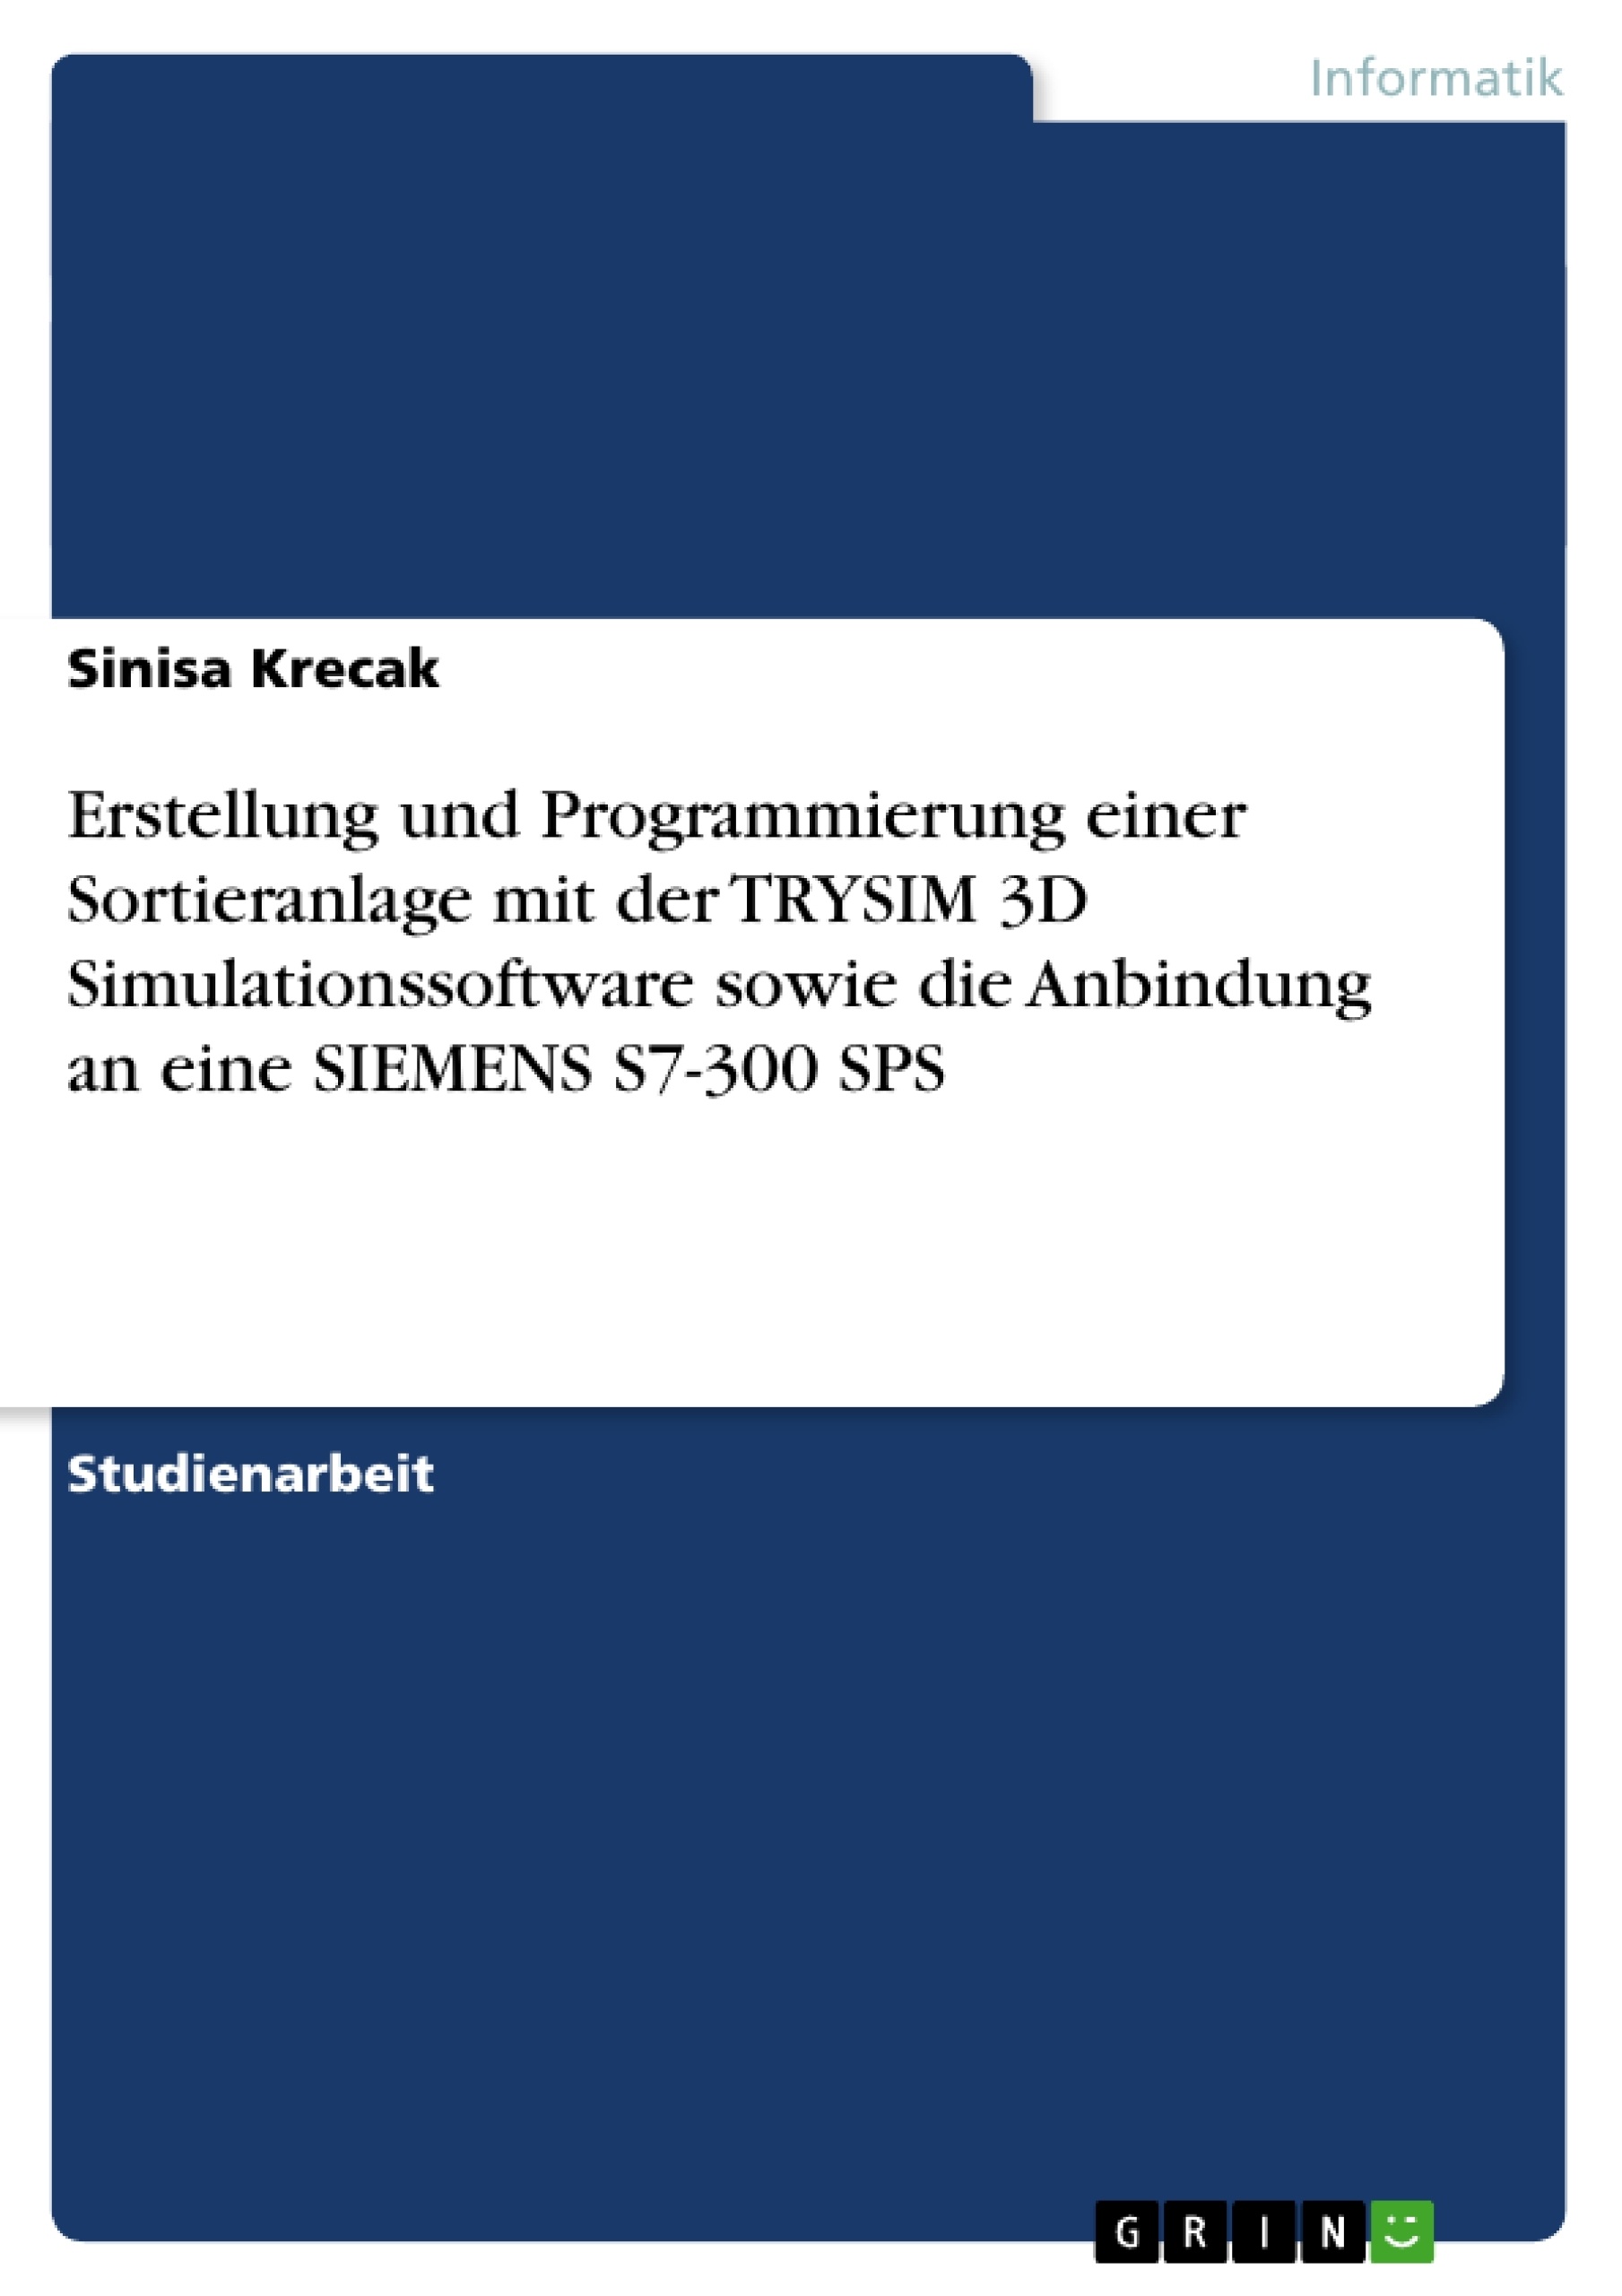 Title: Erstellung und Programmierung einer Sortieranlage mit der TRYSIM 3D Simulationssoftware sowie die Anbindung an eine SIEMENS S7-300 SPS